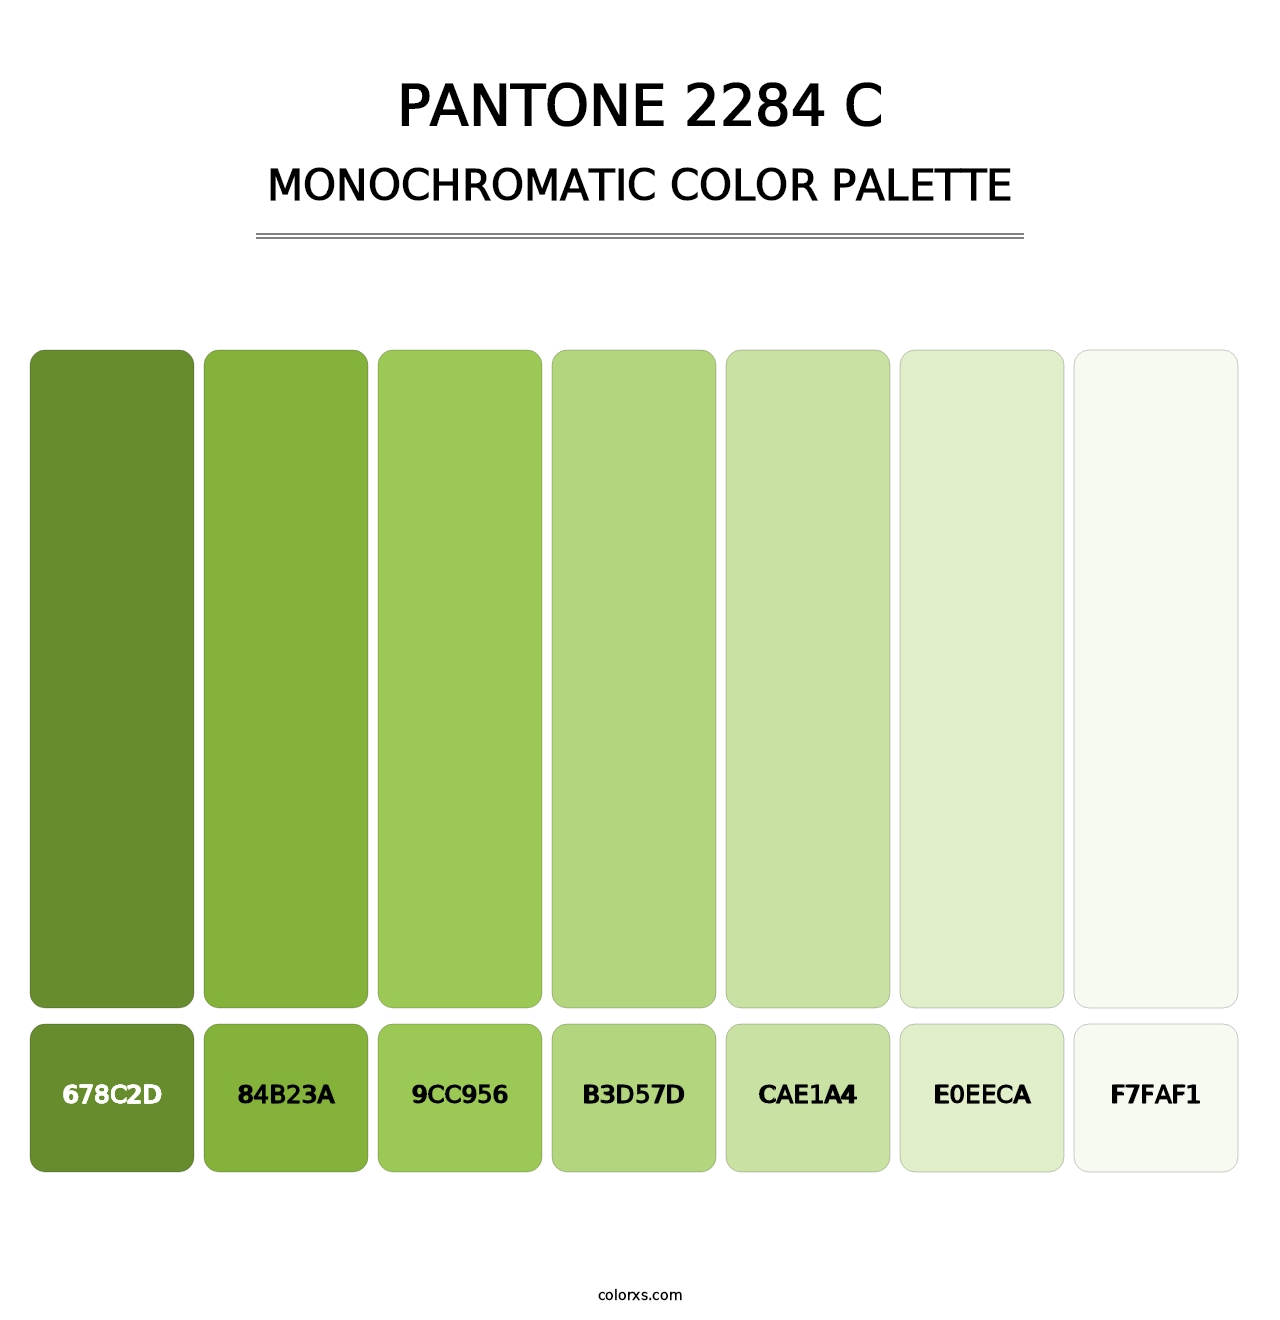 PANTONE 2284 C - Monochromatic Color Palette